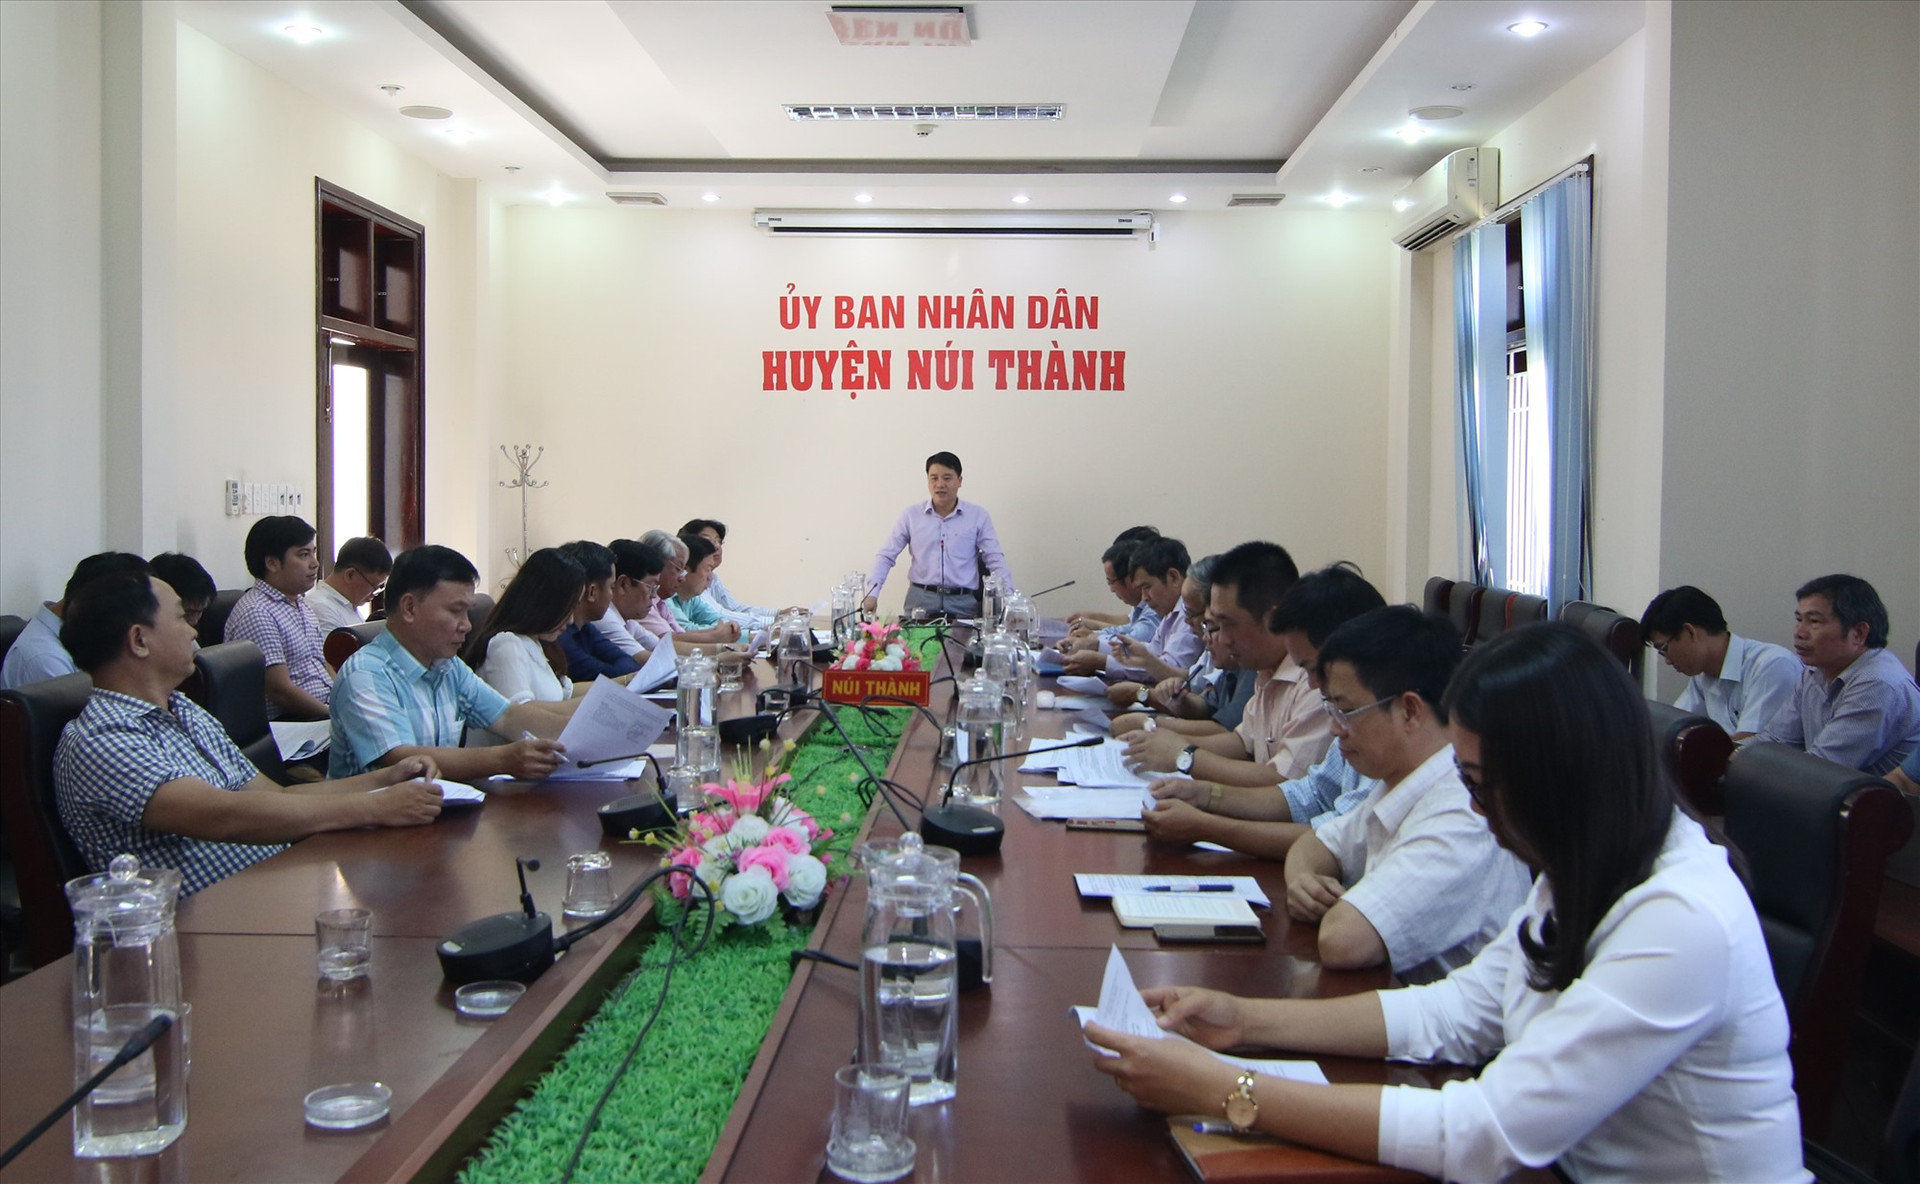 Phó Chủ tịch UBND tỉnh Trần Văn Tân chủ trì buổi làm việc với UBND huyện Núi Thành. Ảnh: C.A